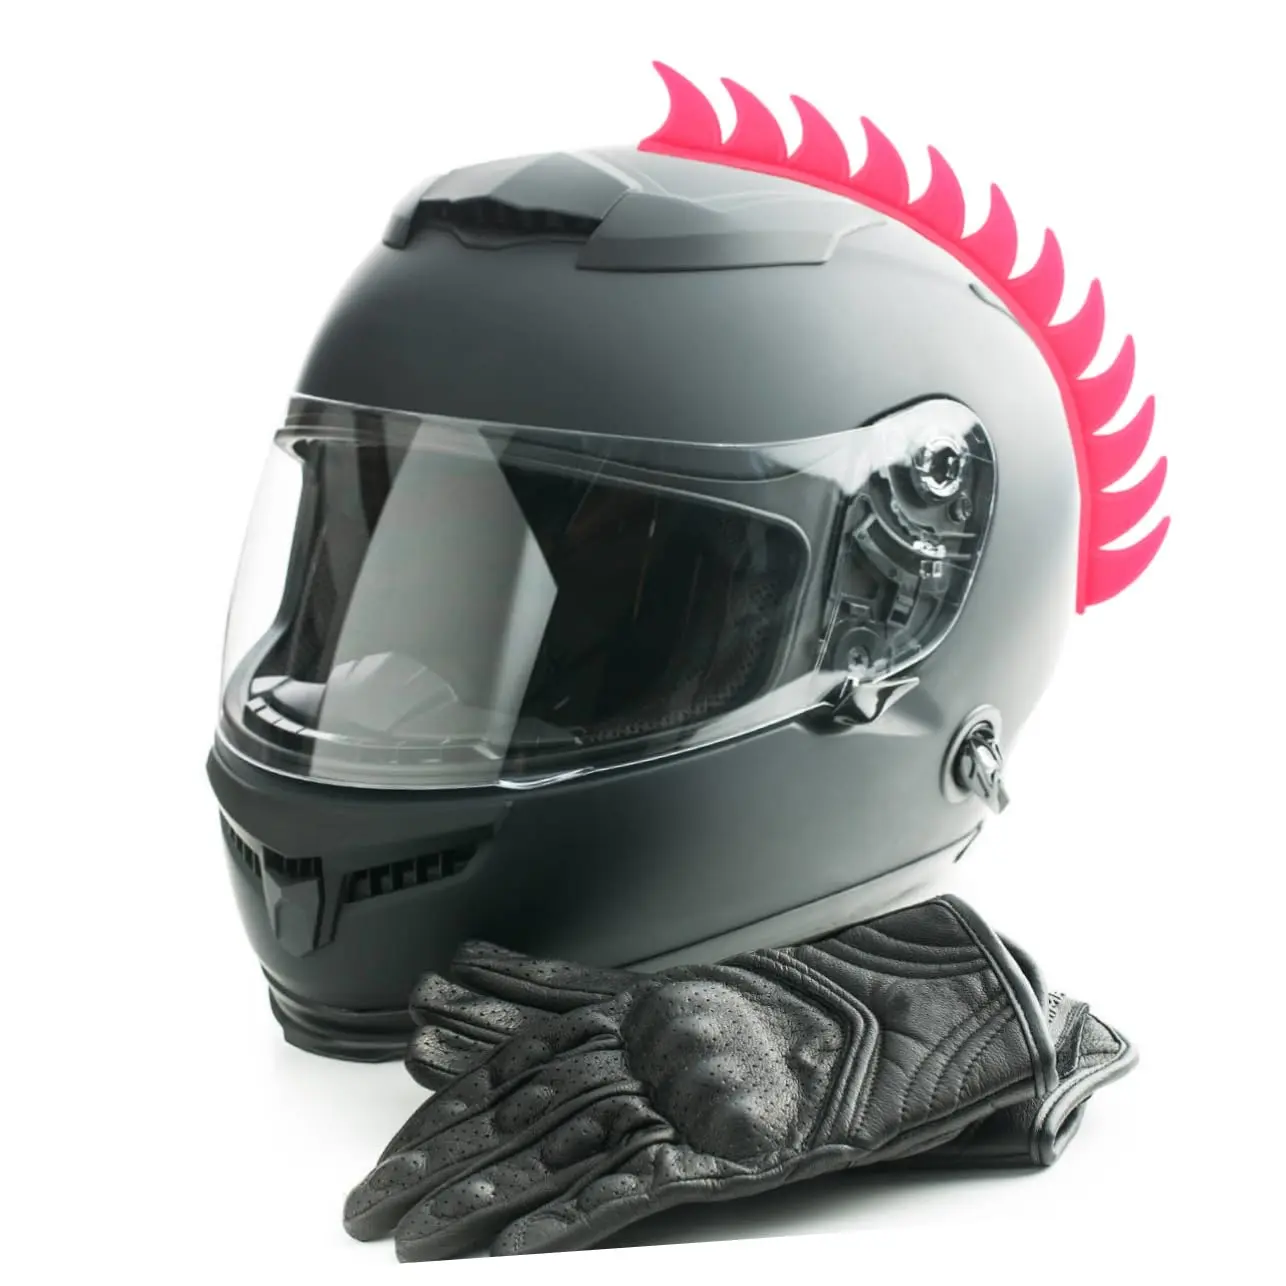 cascos modificados para motocicleta - Qué es un casco de moto homologado